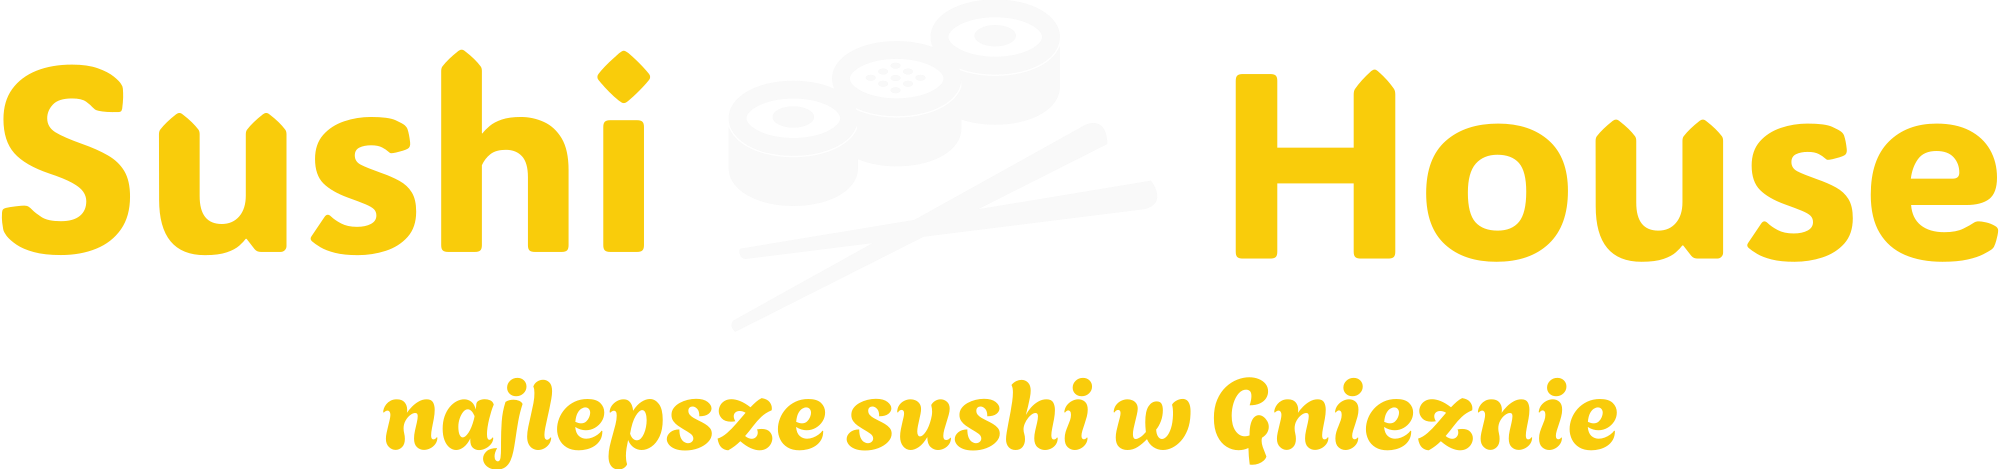 Sushi House - najświeższe i najlepsze sushi w Gnieźnie